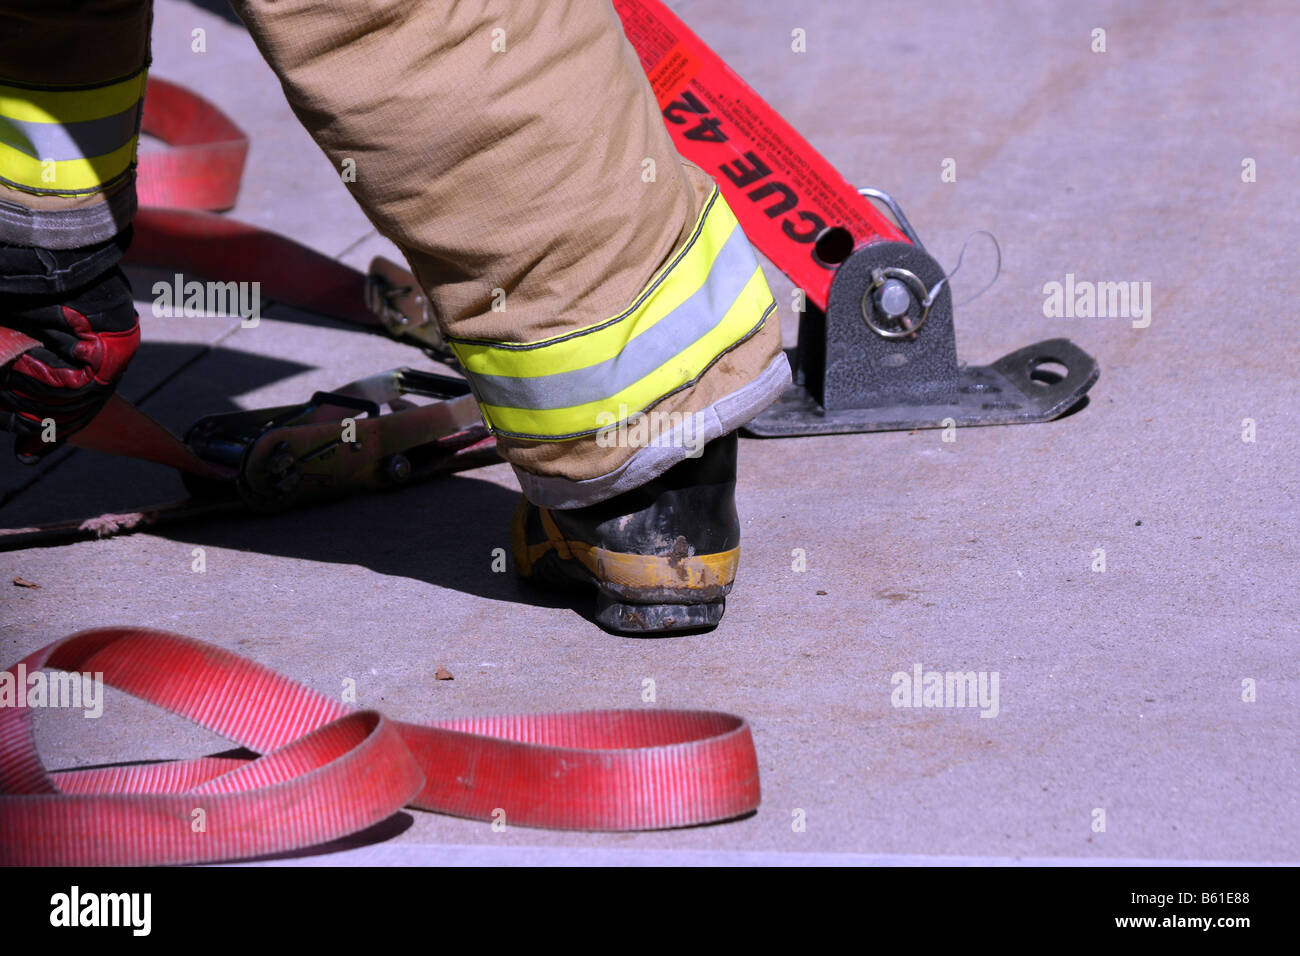 Das hintere Bein und Fuß eines Feuerwehrmannes mit Bar und Gurte, um ein Fahrzeug zu stabilisieren, die bei einem Unfall überrollt hat Stockfoto